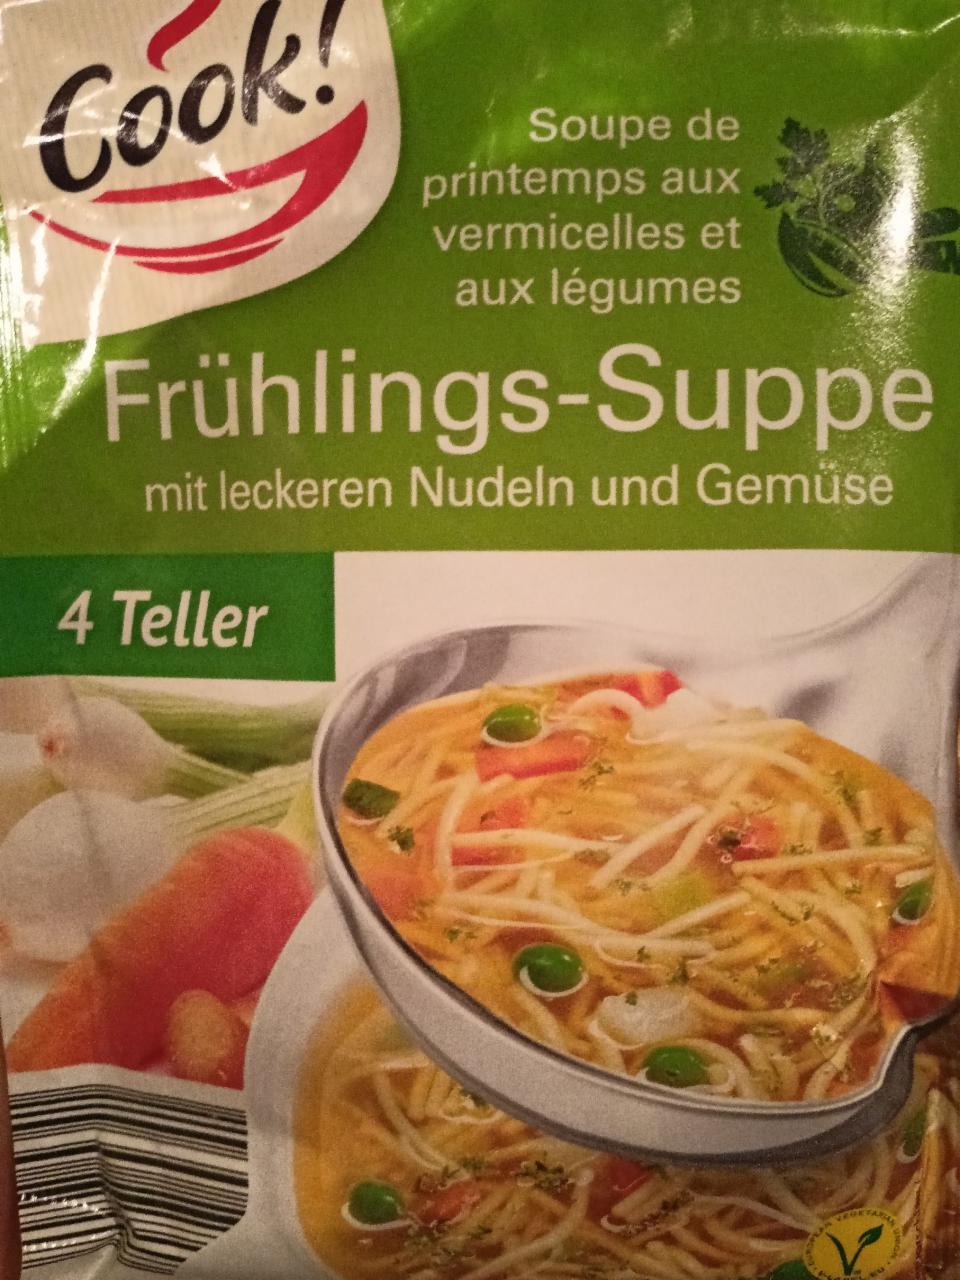 Fotografie - Frühlings-Suppe Cook!